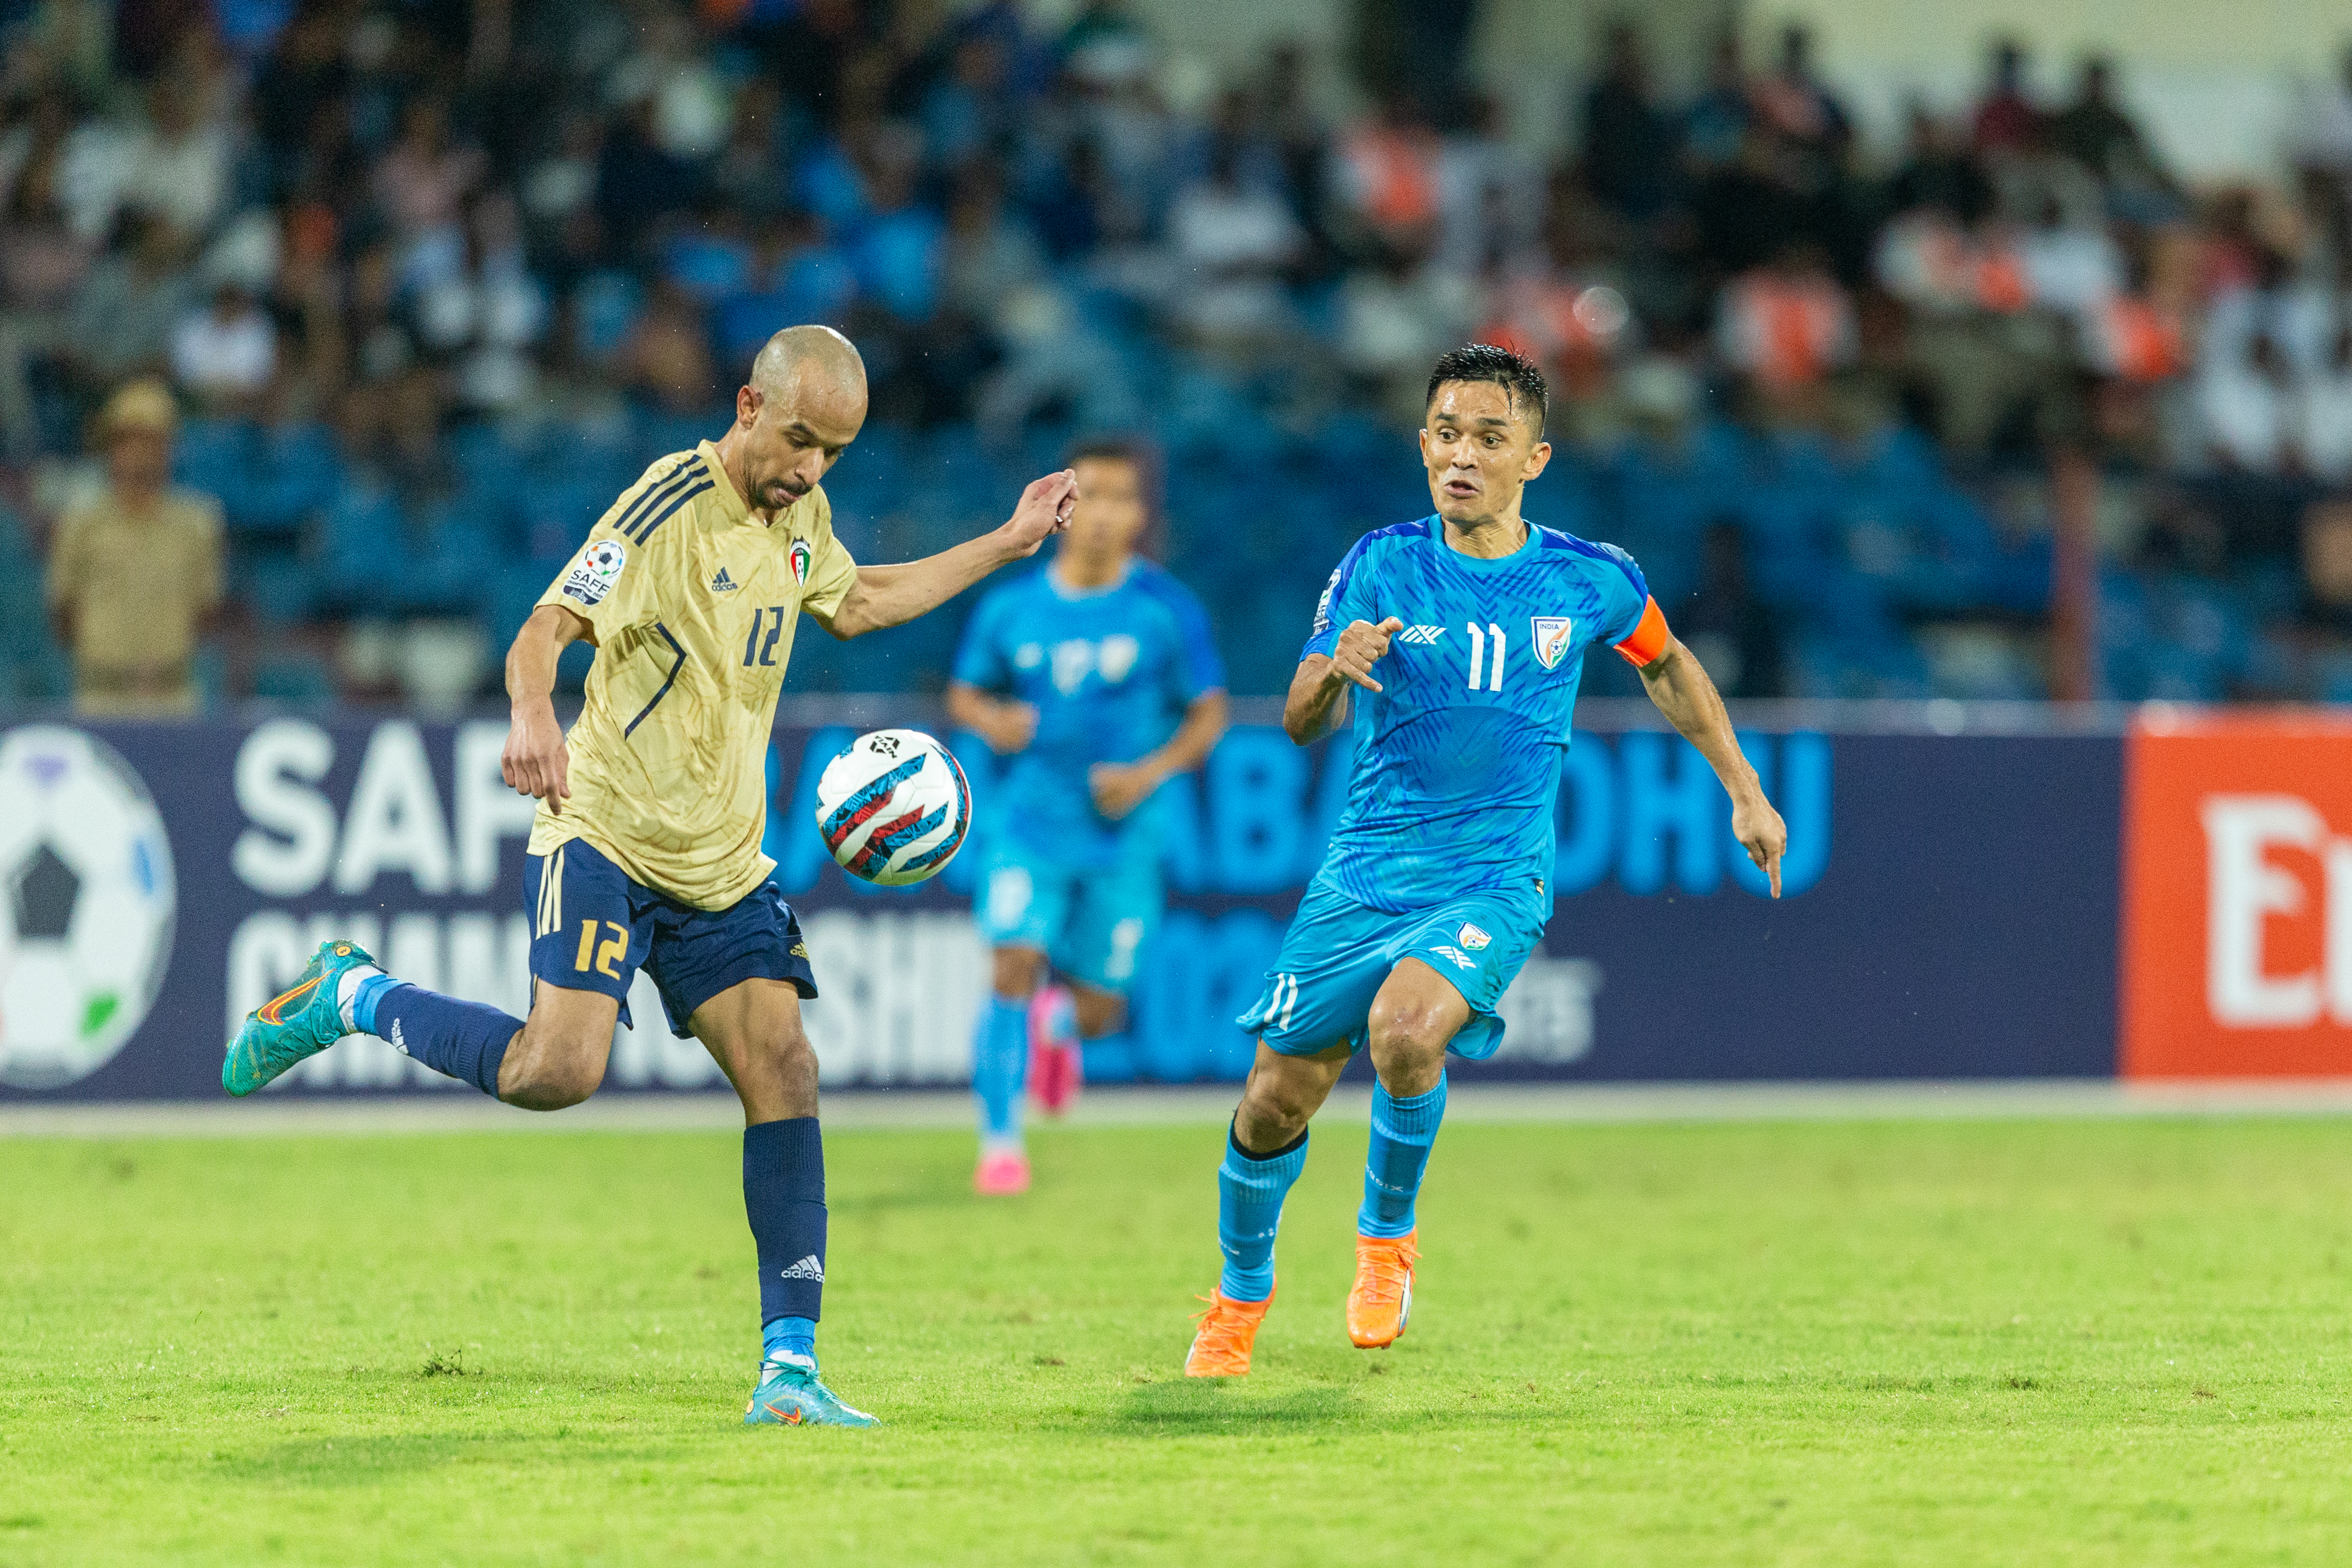 Ấn Độ vs Lebanon: Đội trưởng đội bóng đá Ấn Độ Sunil Chhetri gợi ý về việc giải nghệ trước trận Bán kết Giải vô địch SAFF 2023 